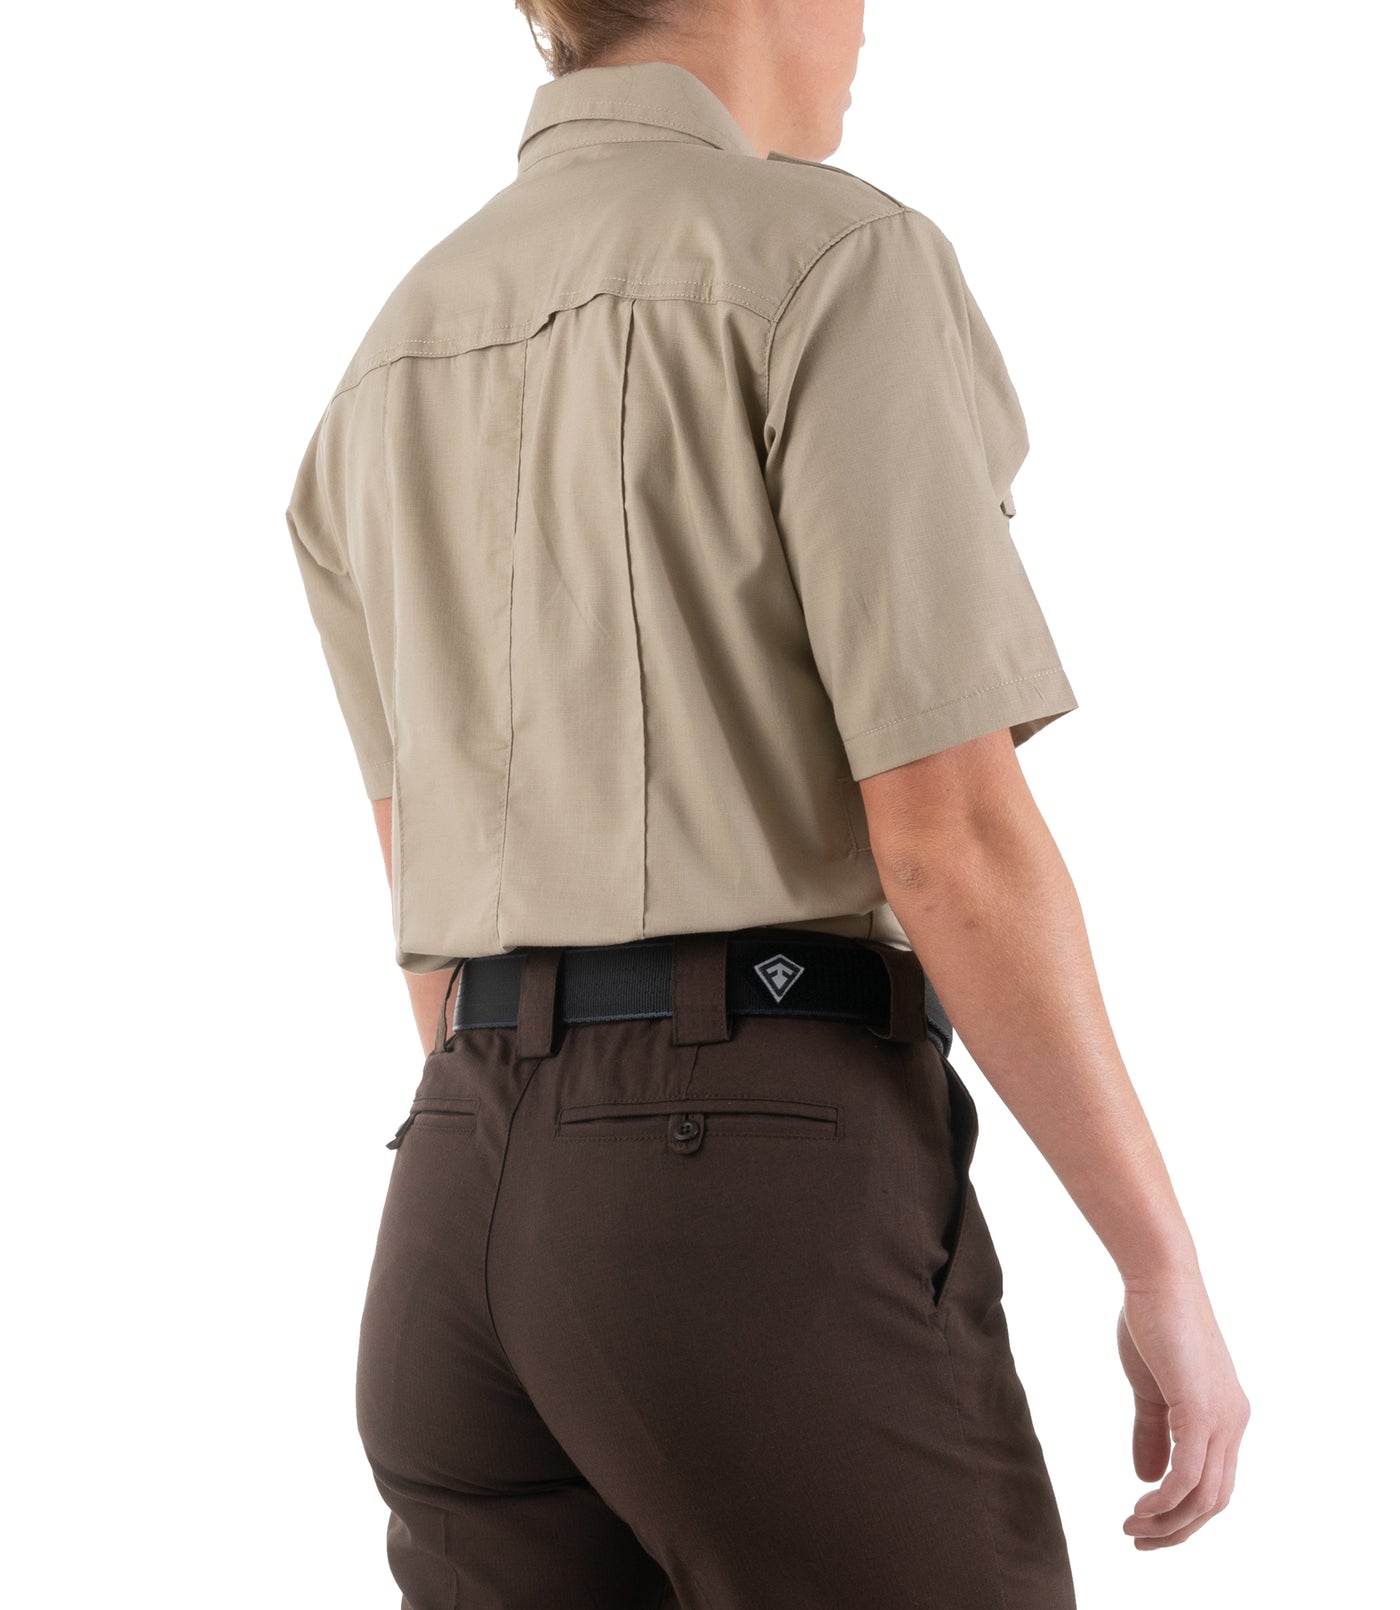 Side of Women's Pro Duty Uniform Short Sleeve Shirt in Silver Tan